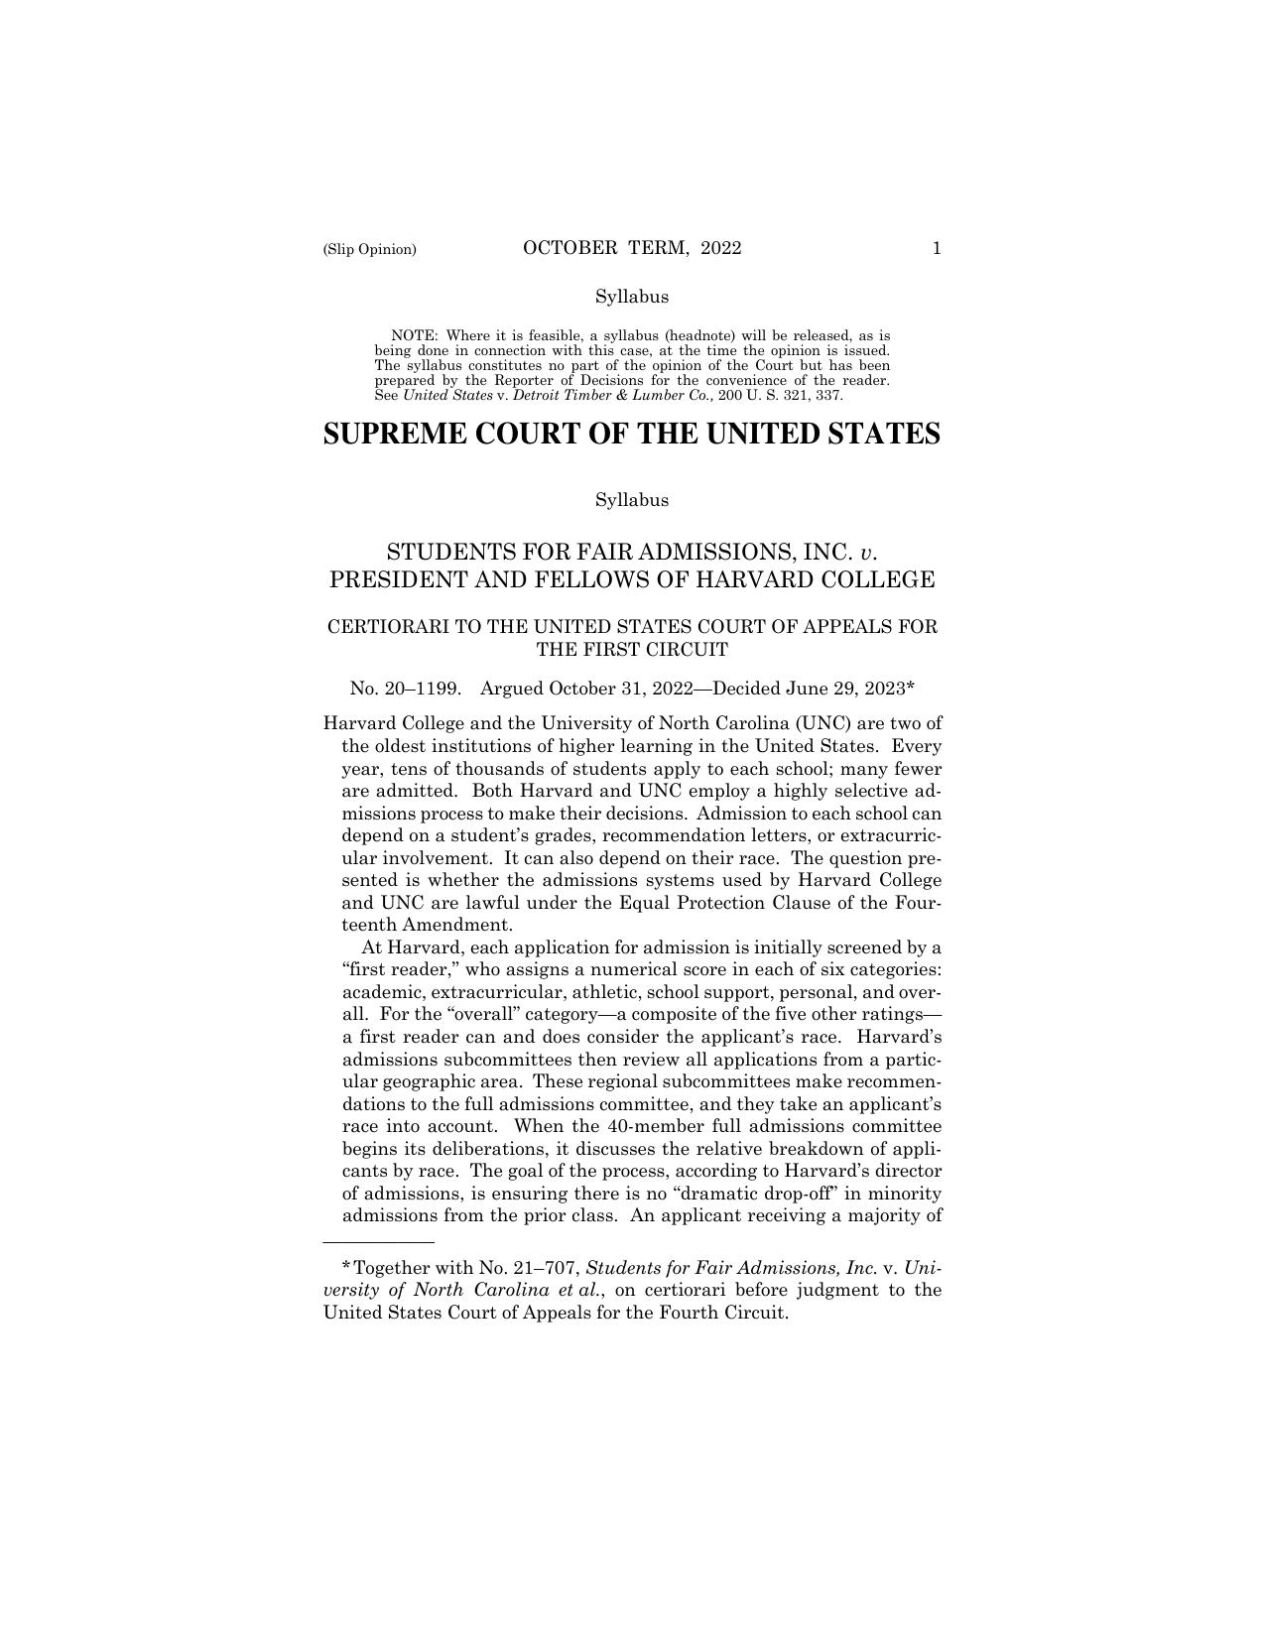 Supreme Court Affirmative Action Ruling 2news com